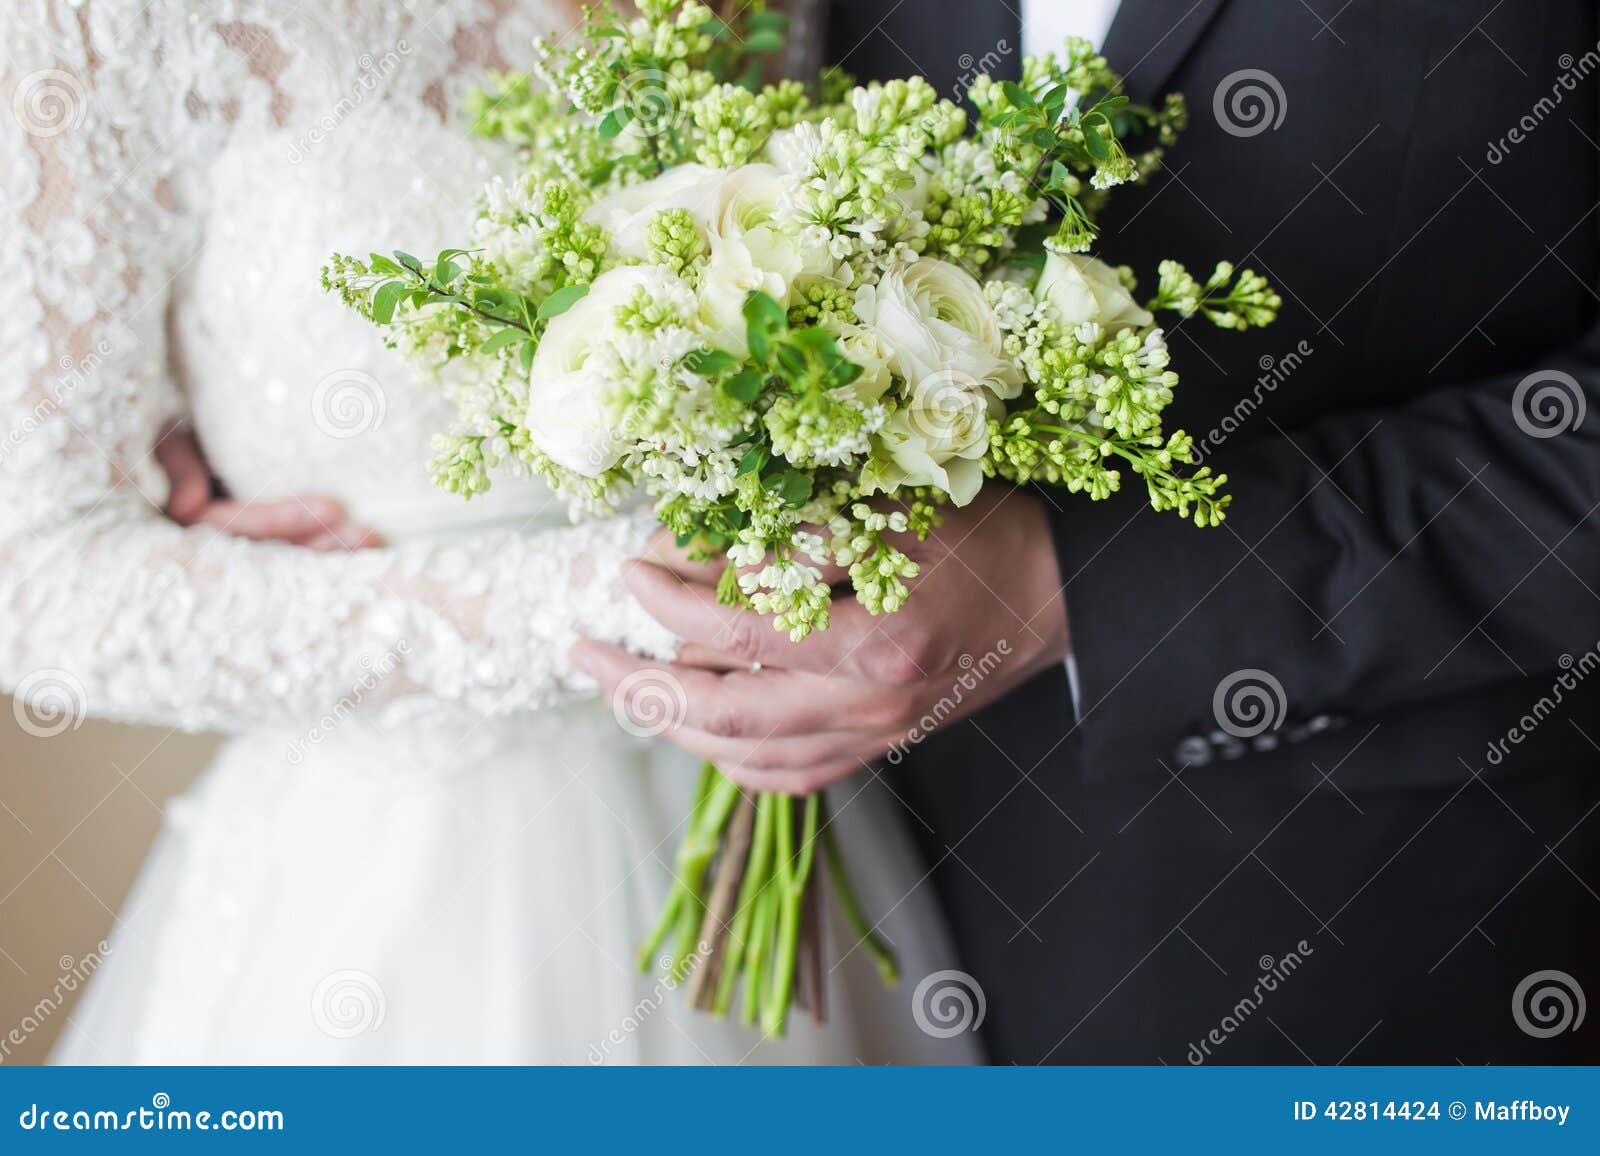 Couple hands on wedding stock photo. Image of people - 42814424